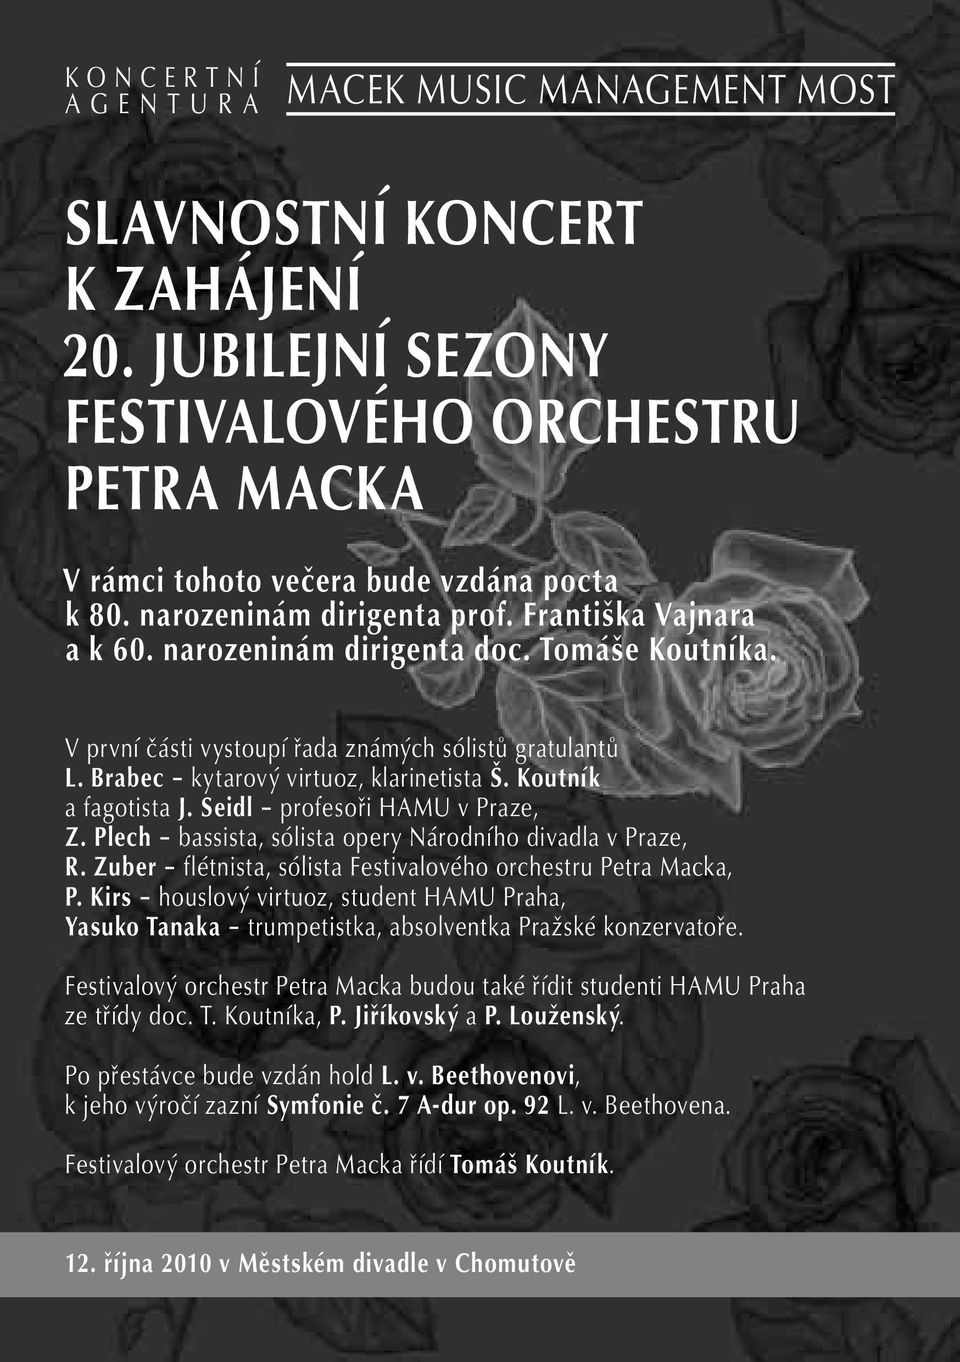 Plech bassista, sólista opery Národního divadla v Praze, R. Zuber flétnista, sólista Festivalového orchestru Petra Macka, P.